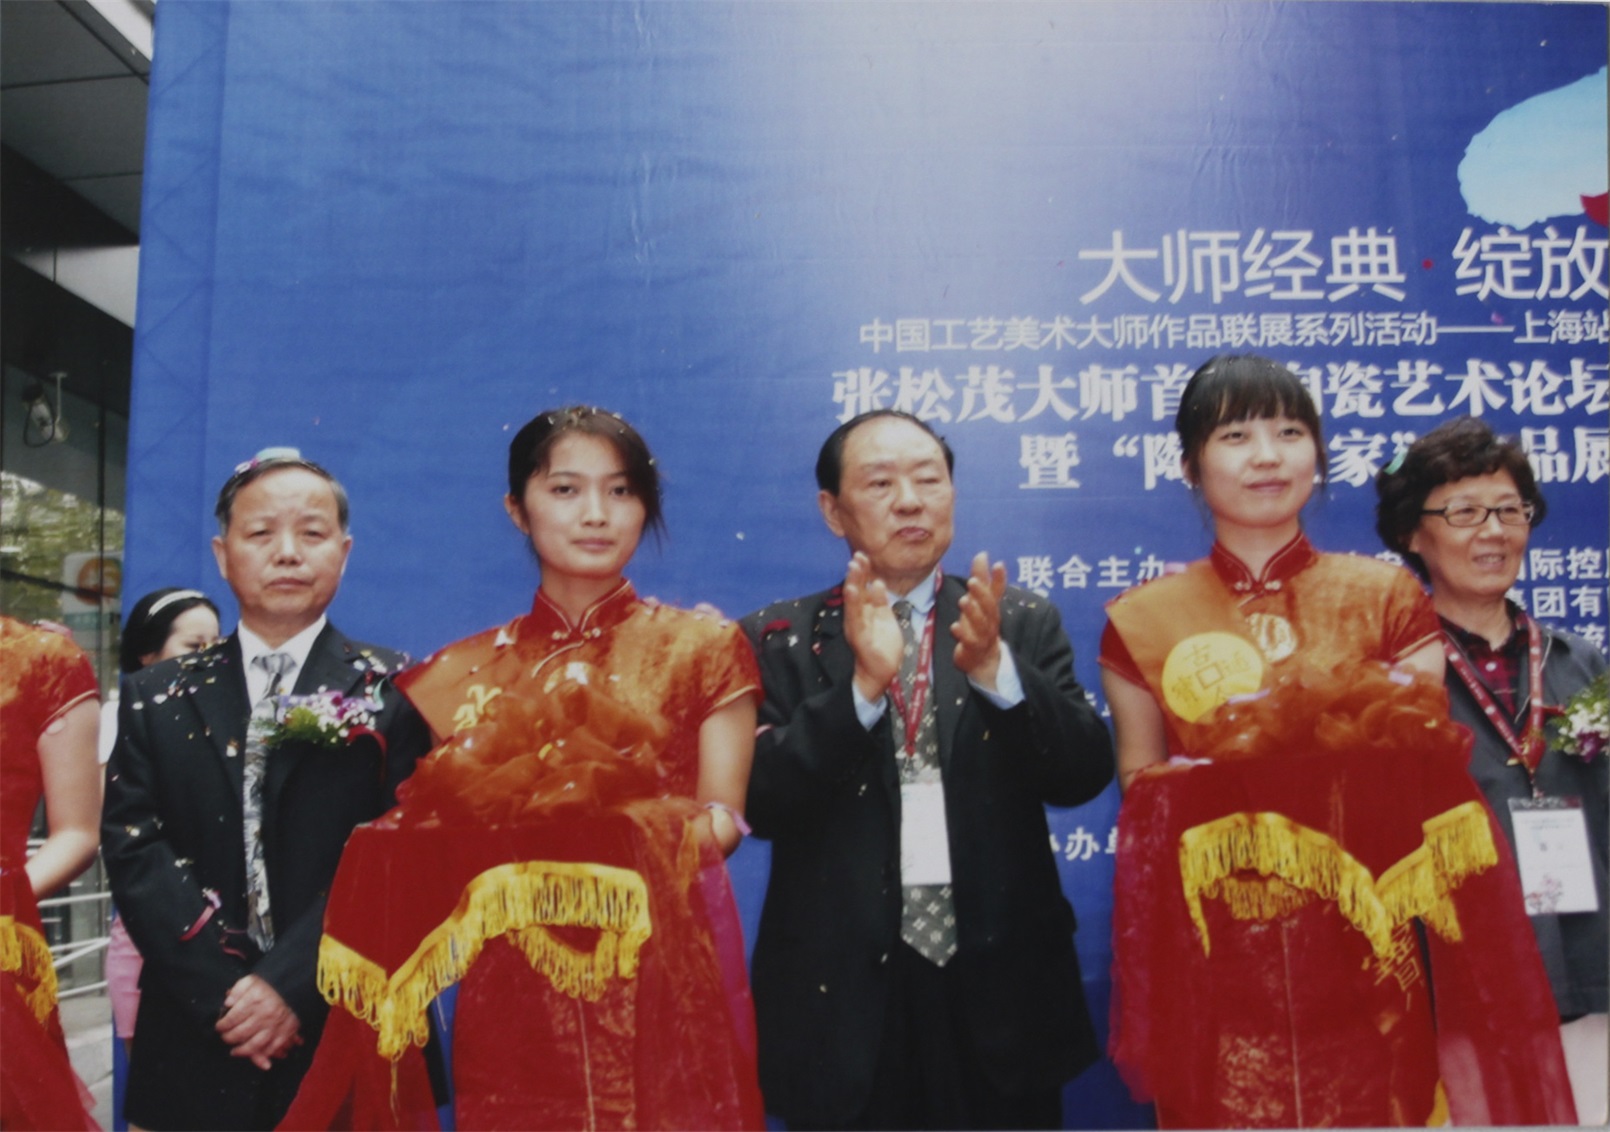 2011年12月，为“张松茂大师首届陶瓷论坛”暨“中国工艺美术大师作品联展上海站首展”开幕式剪彩和点评。